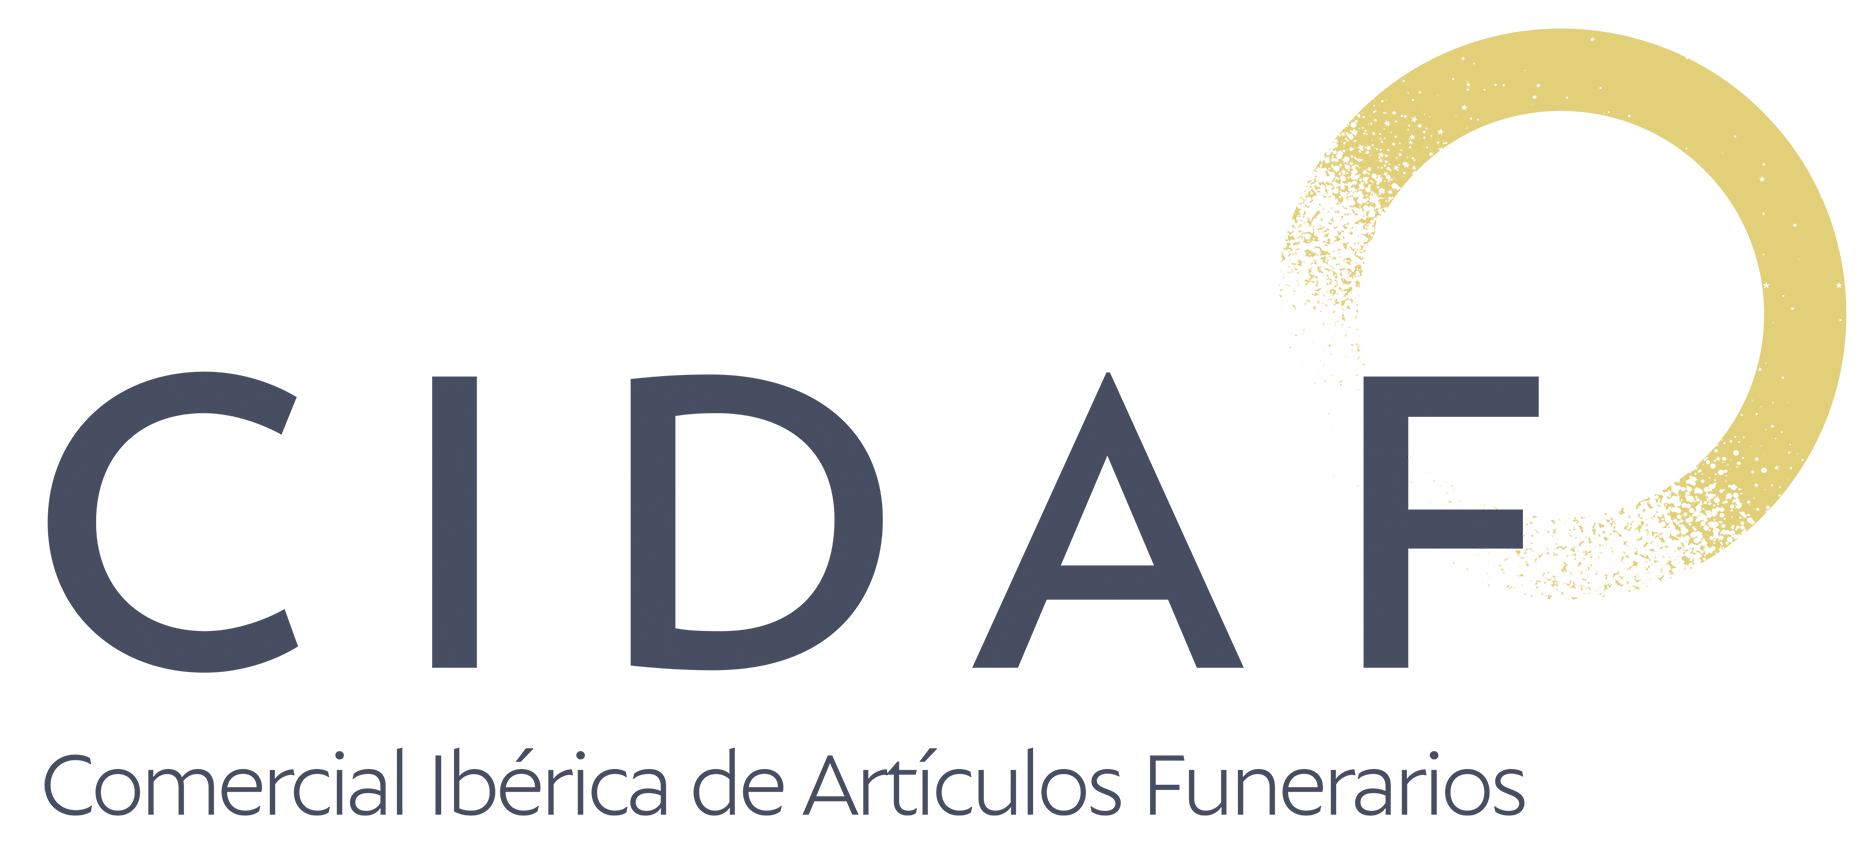 Comercial Ibérica de Artículos Funerarios